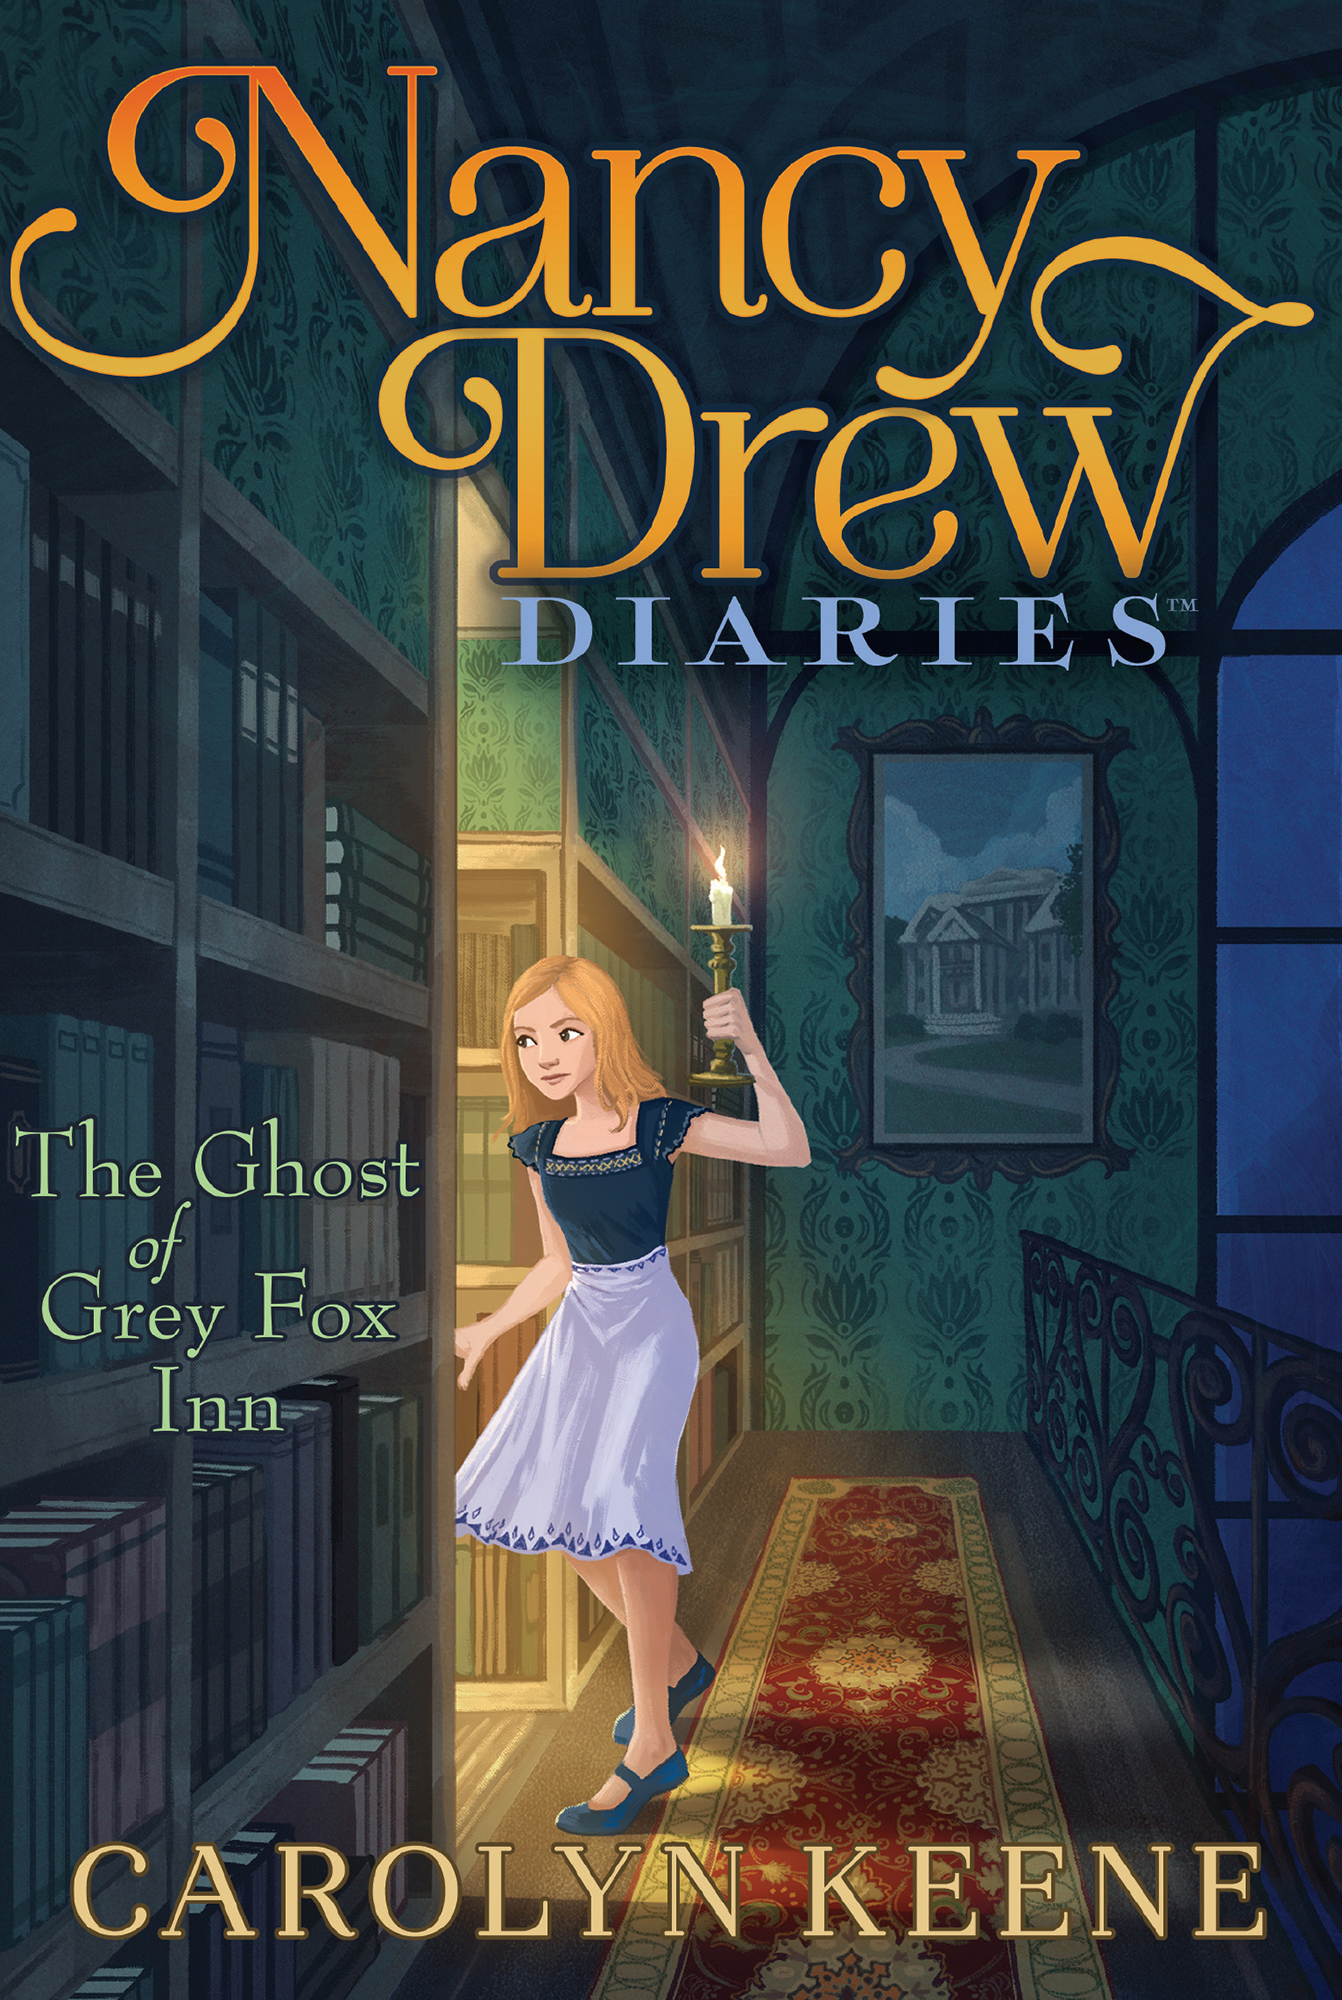 The Ghost of Grey Fox Inn by Carolyn Keene